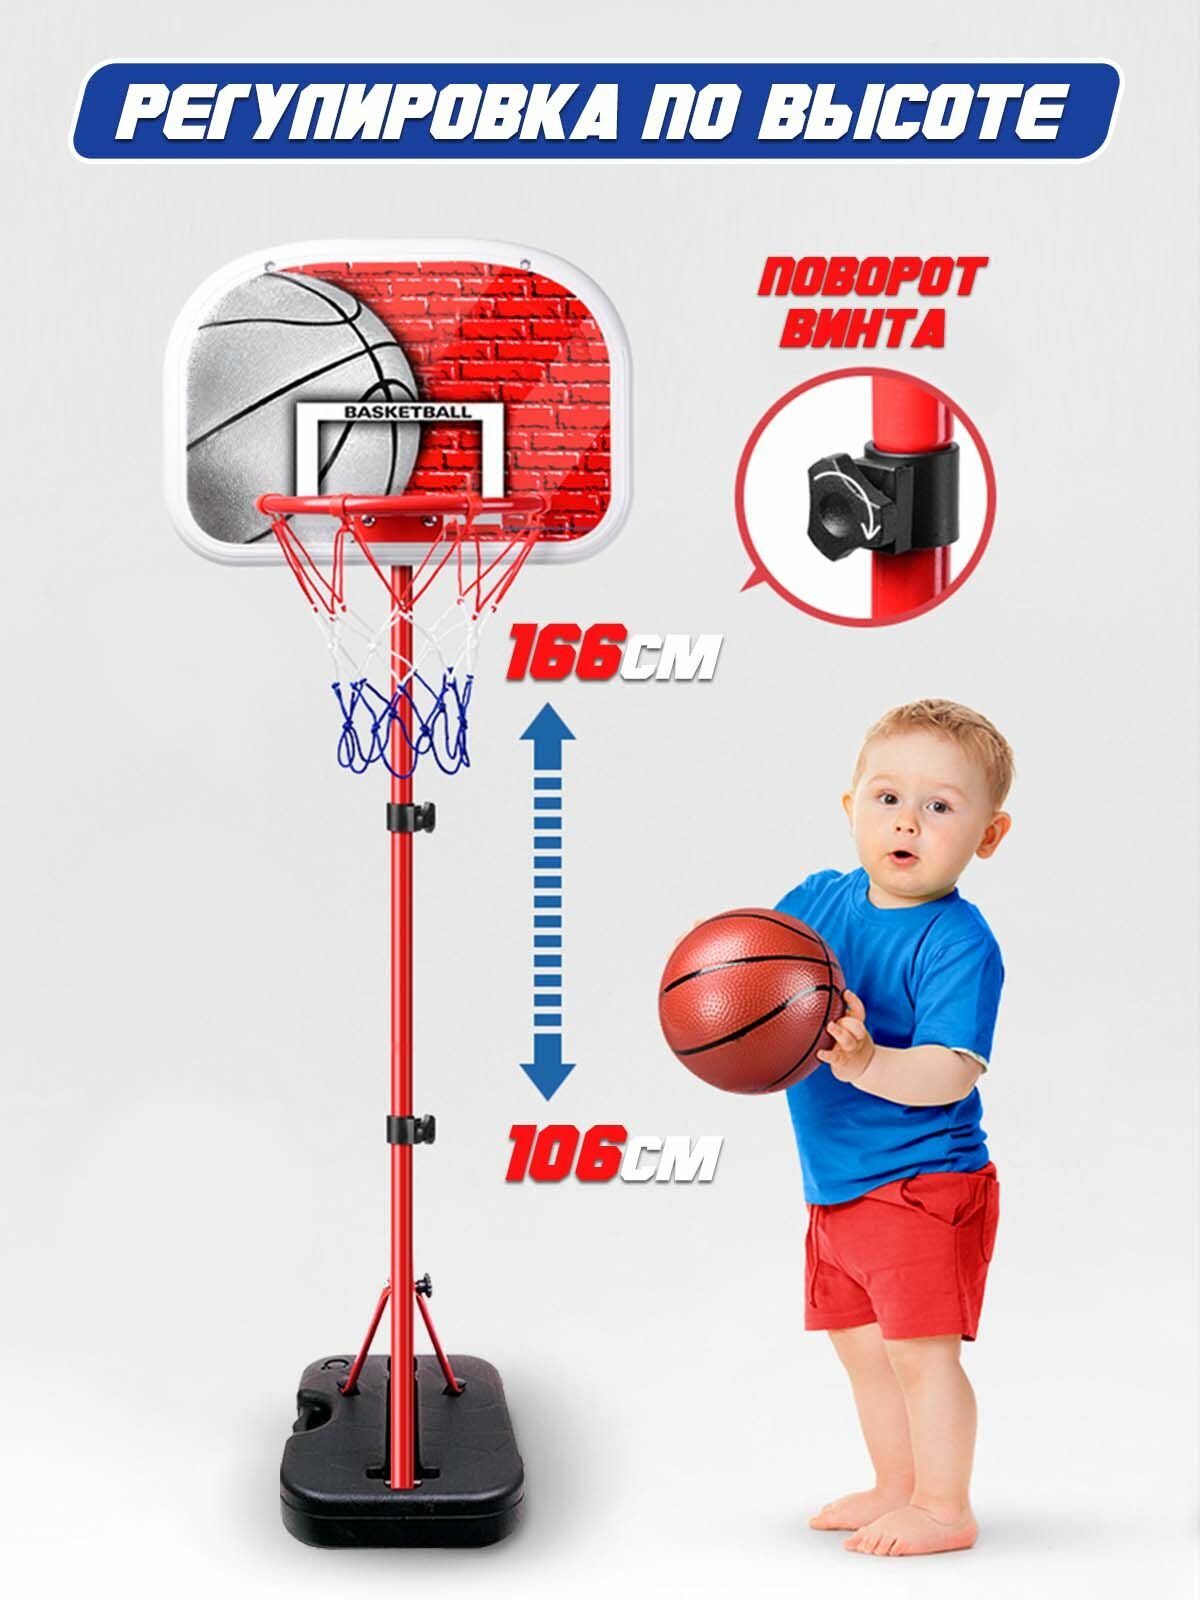 Баскетбольное кольцо для дома и улицы WiMi, спортивный уголок для ребенка, кольцеброс детский с регулируемой высотой корзины, комнатный баскетбол для спортивной активности детей